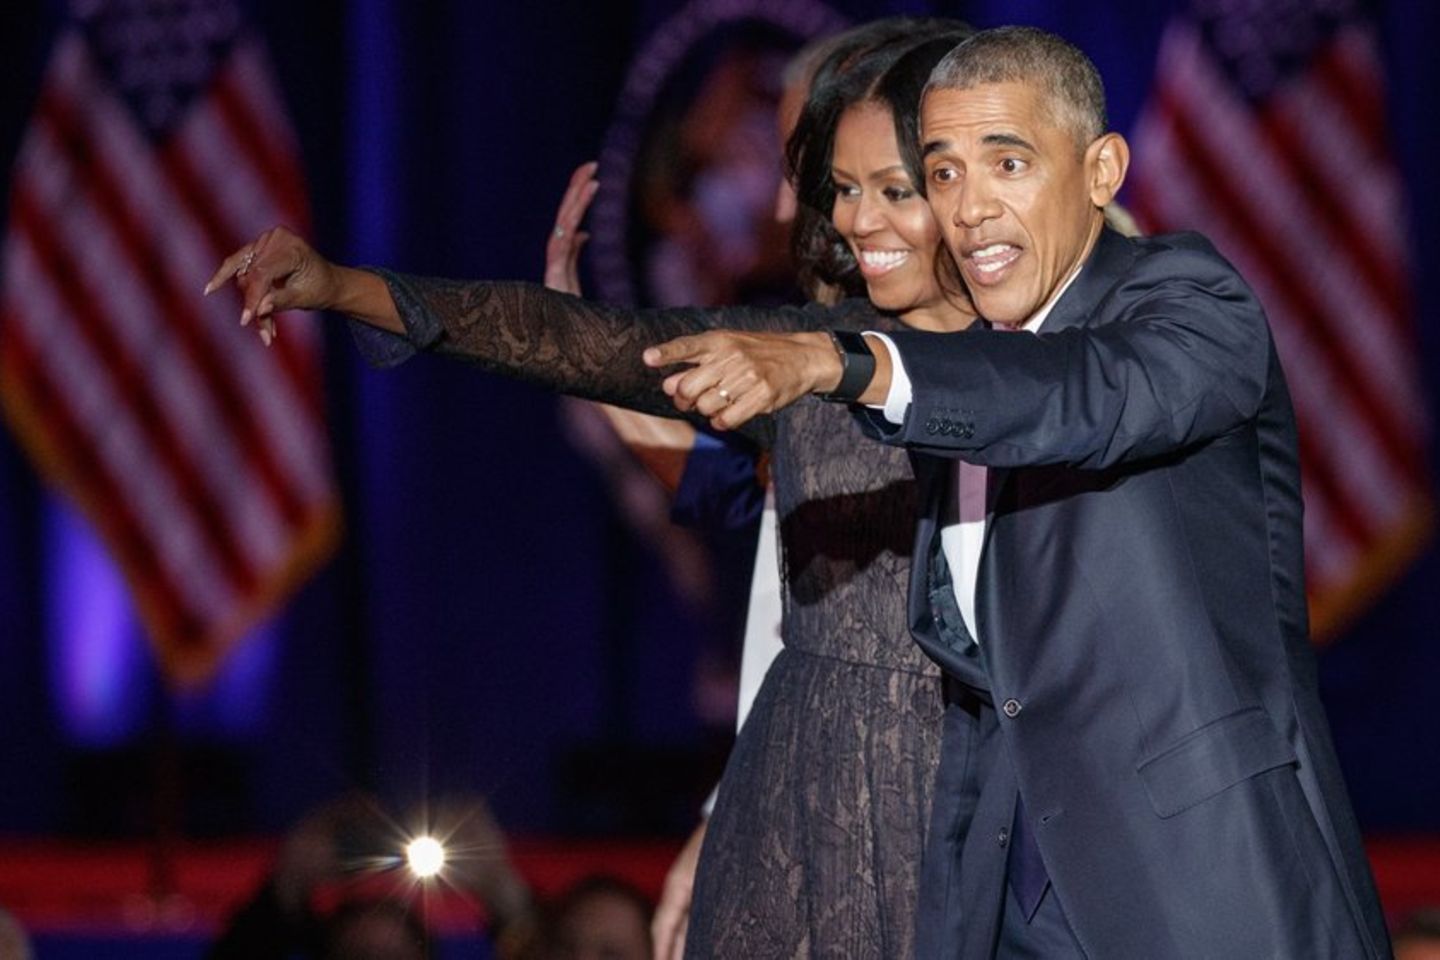 Barack Obama über Eheprobleme: "Situation war einfach nicht normal"